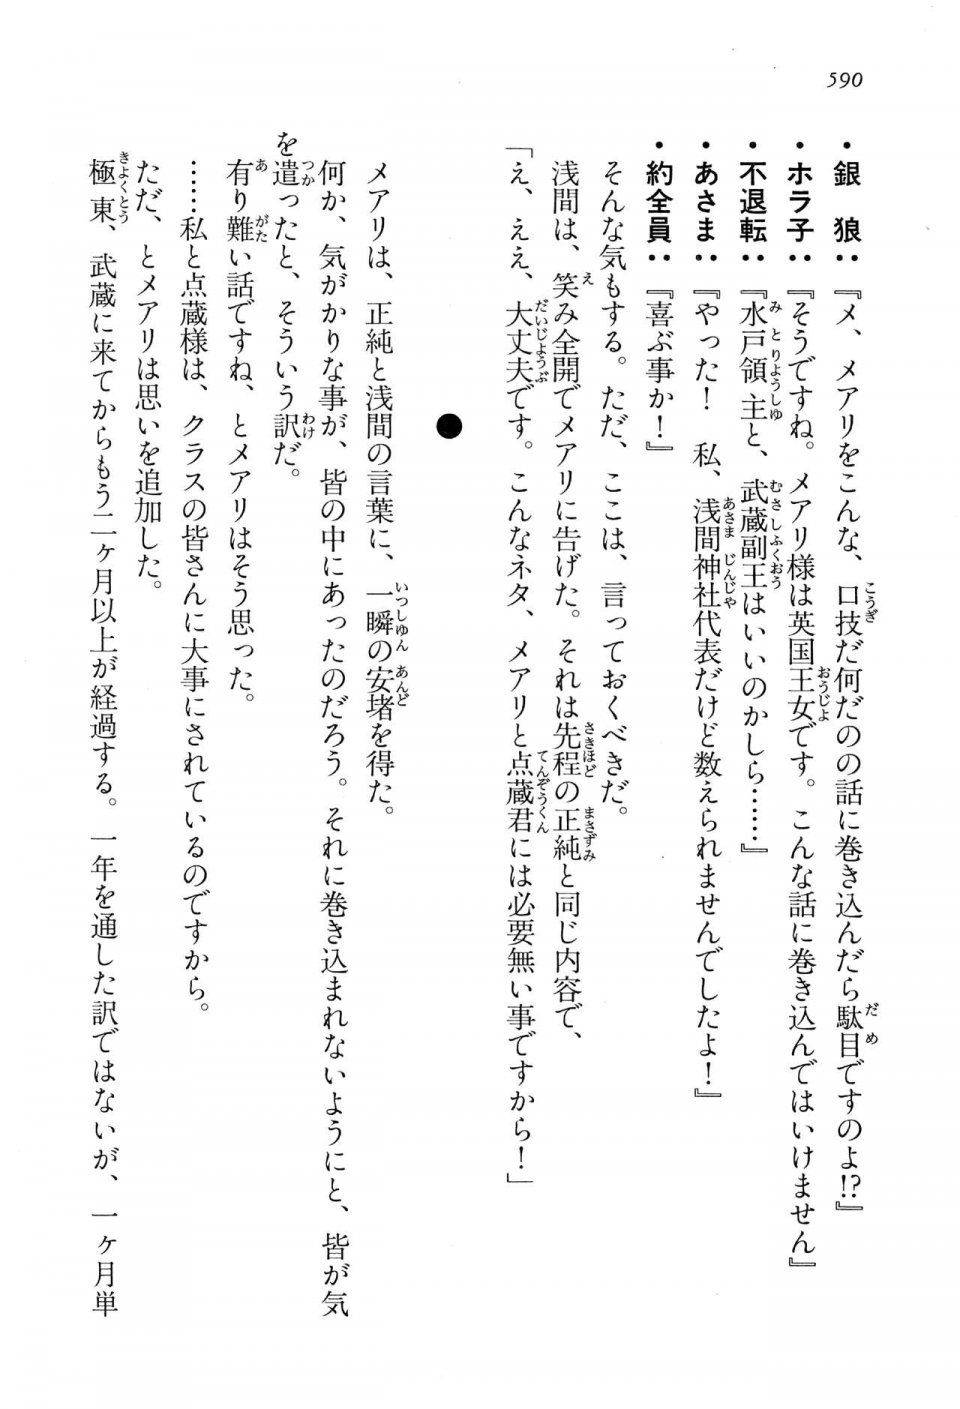 Kyoukai Senjou no Horizon LN Vol 13(6A) - Photo #590